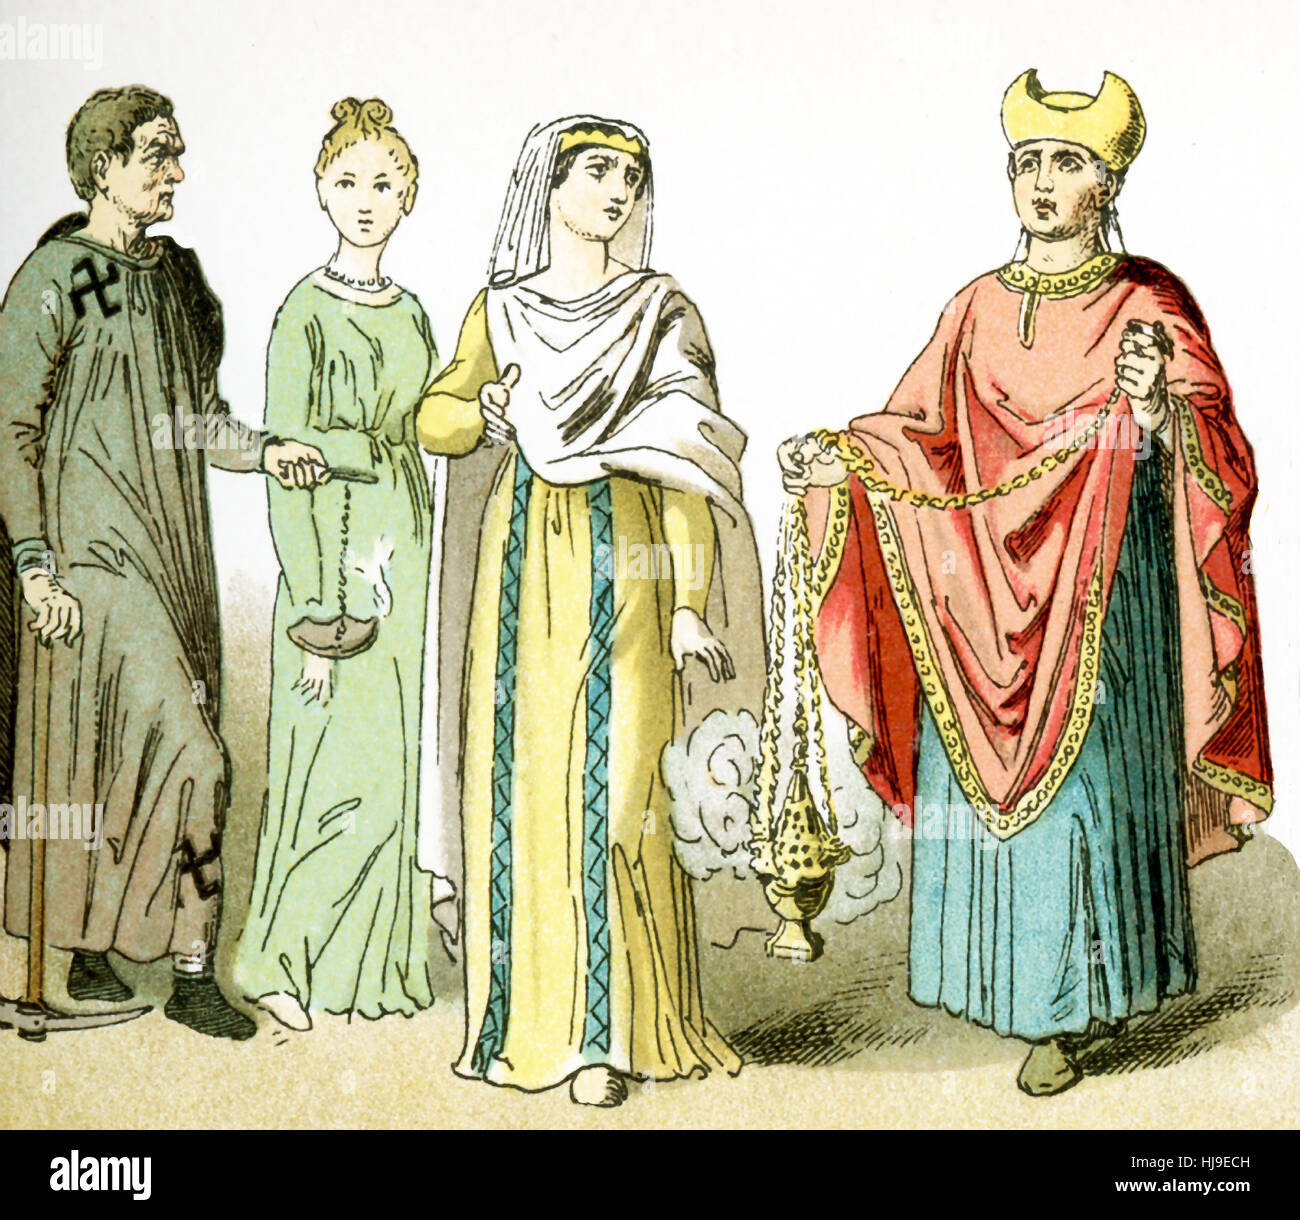 Die Zahlen von links nach rechts, hier vertreten repräsentieren alten Roman Christians. Von links nach rechts, sie sind: ein Totengräber aus den Katakomben, zwei Frauen und ein Priester. Die Abbildung stammt bis 1882. Stockfoto